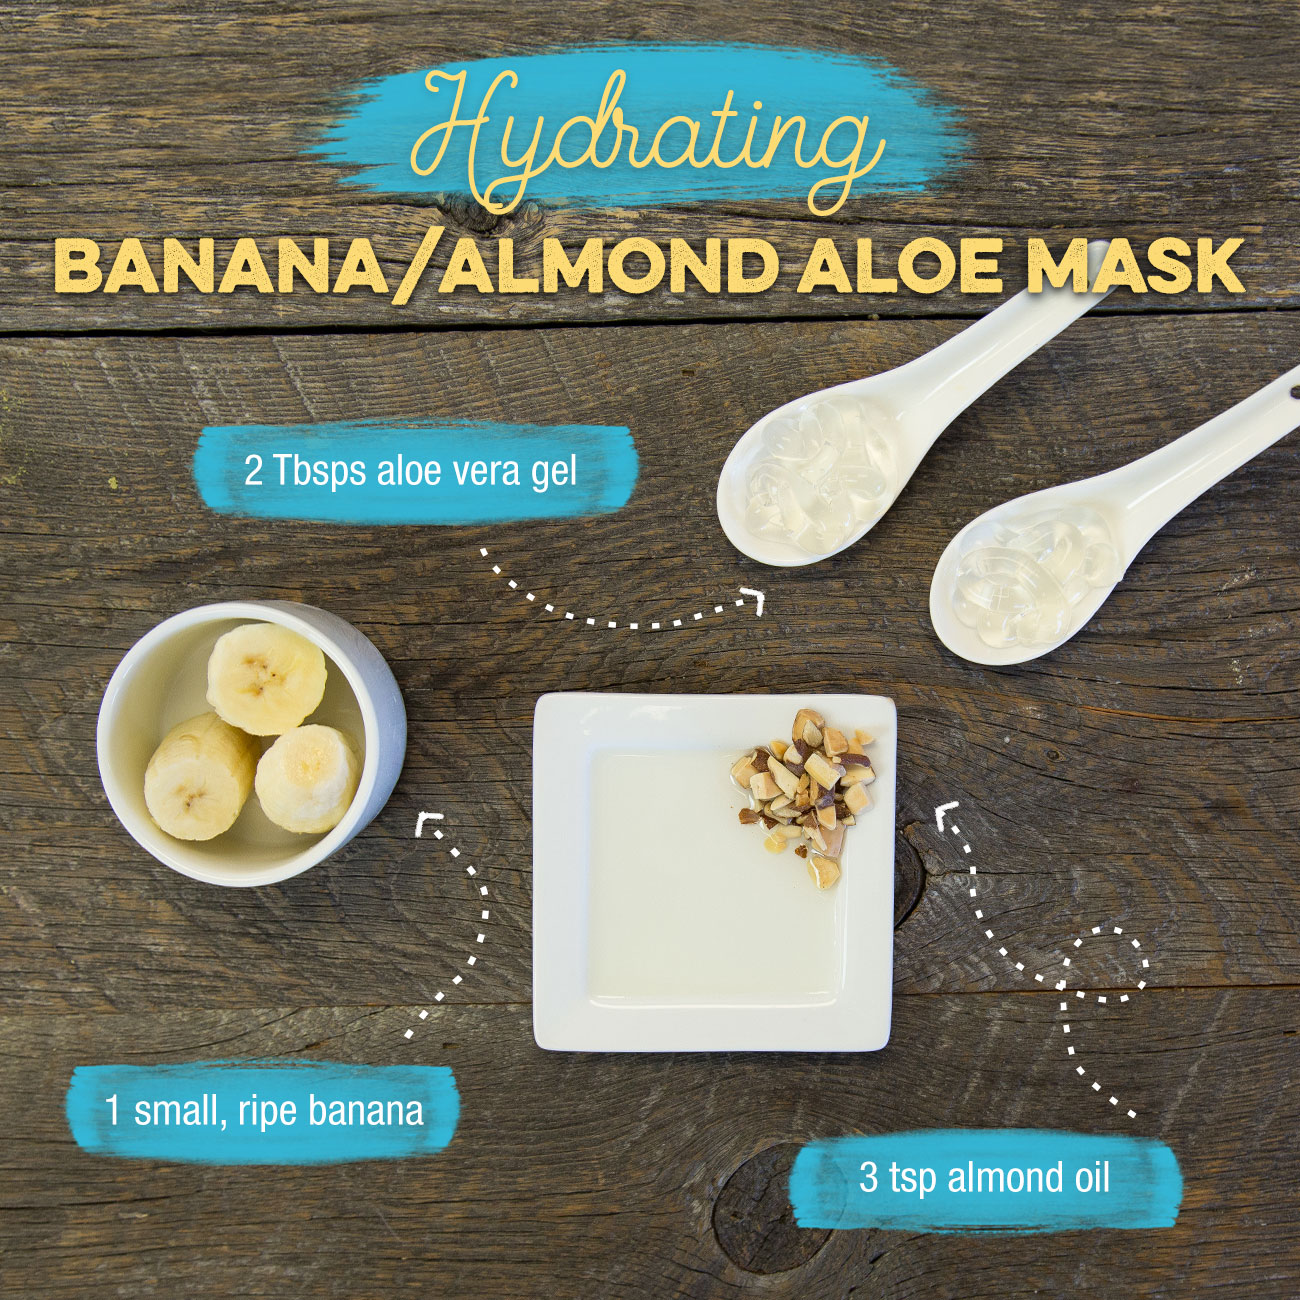 Hydrating Banana/Almond Aloe Mask Recipe